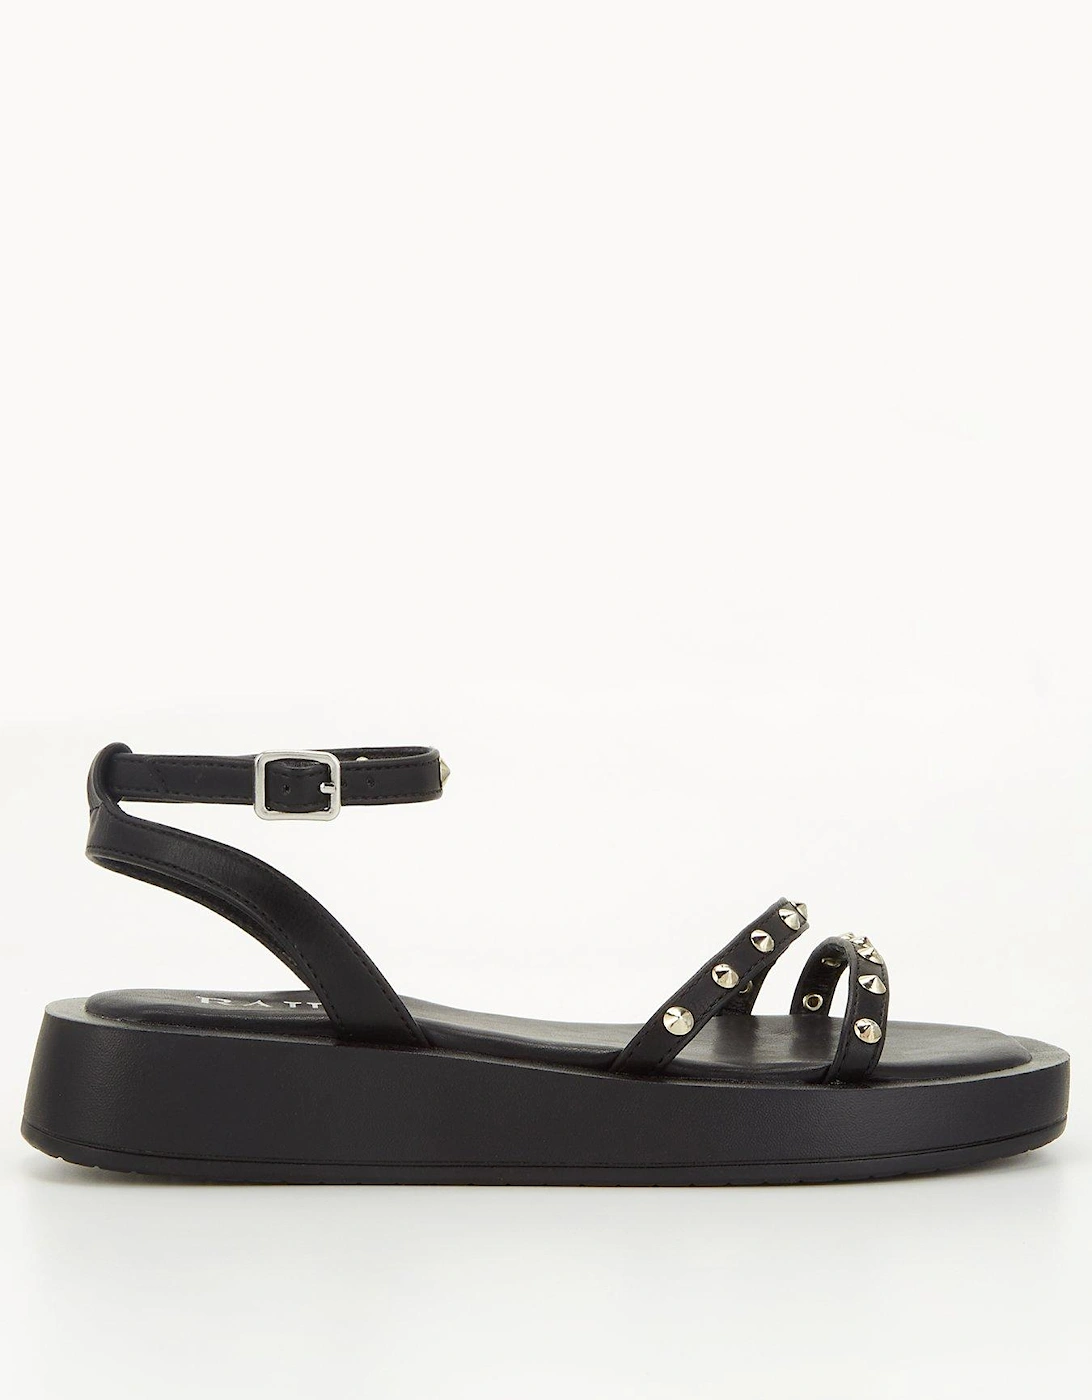 Reeta Flatform Embellished Sandals - Black, 7 of 6